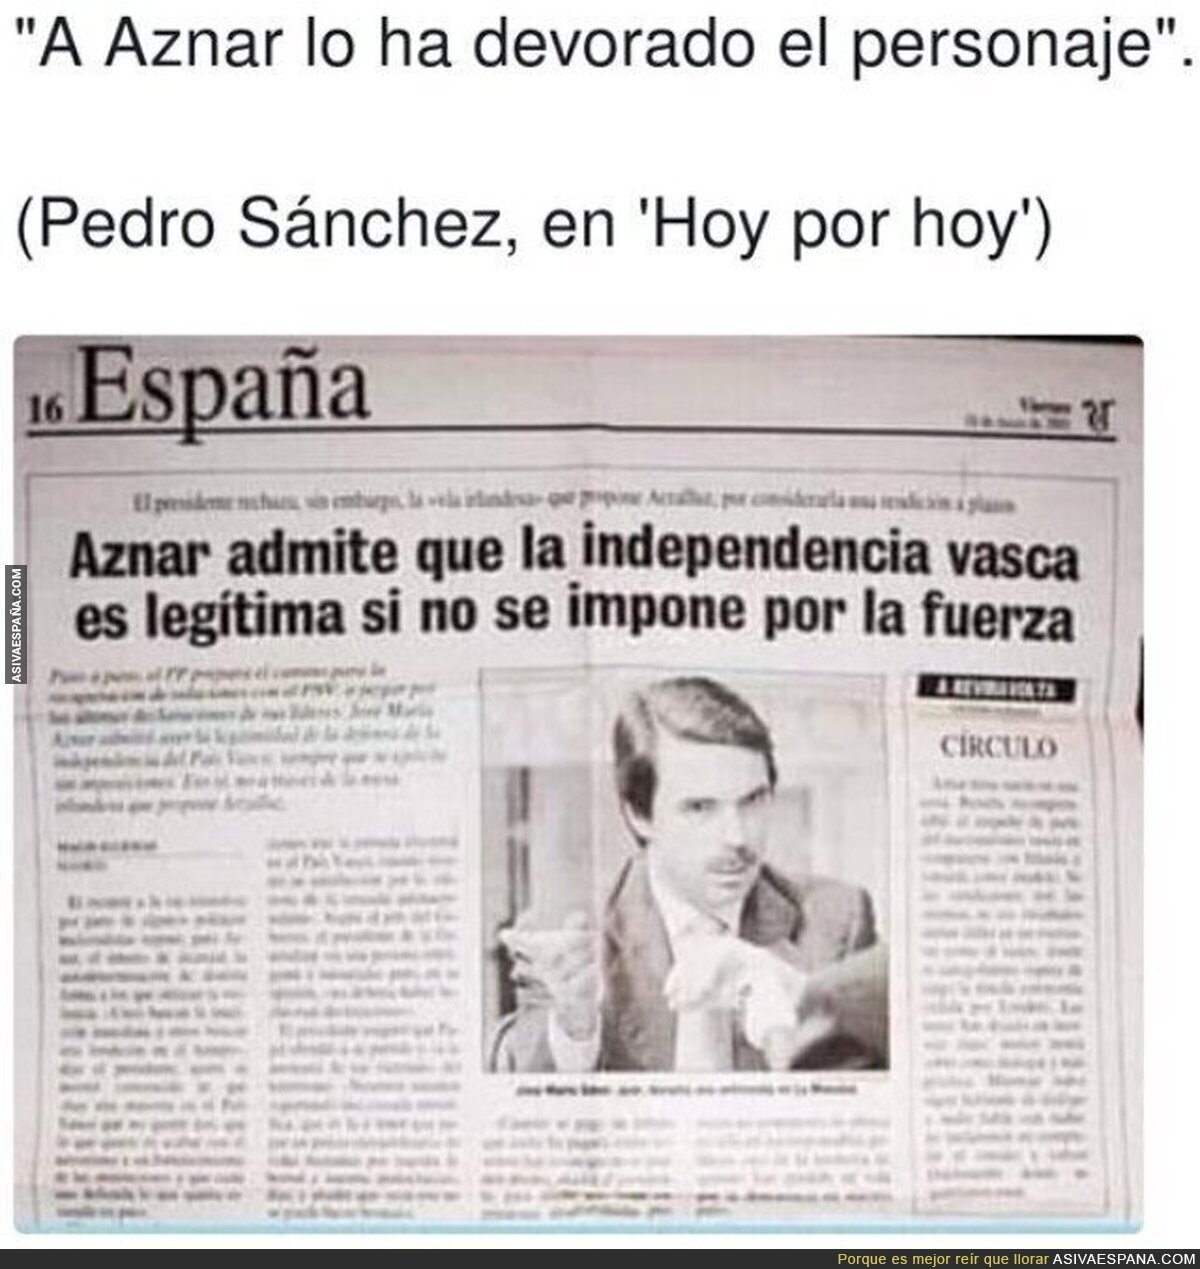 Pedro Sánchez no se equivoca sobre Aznar